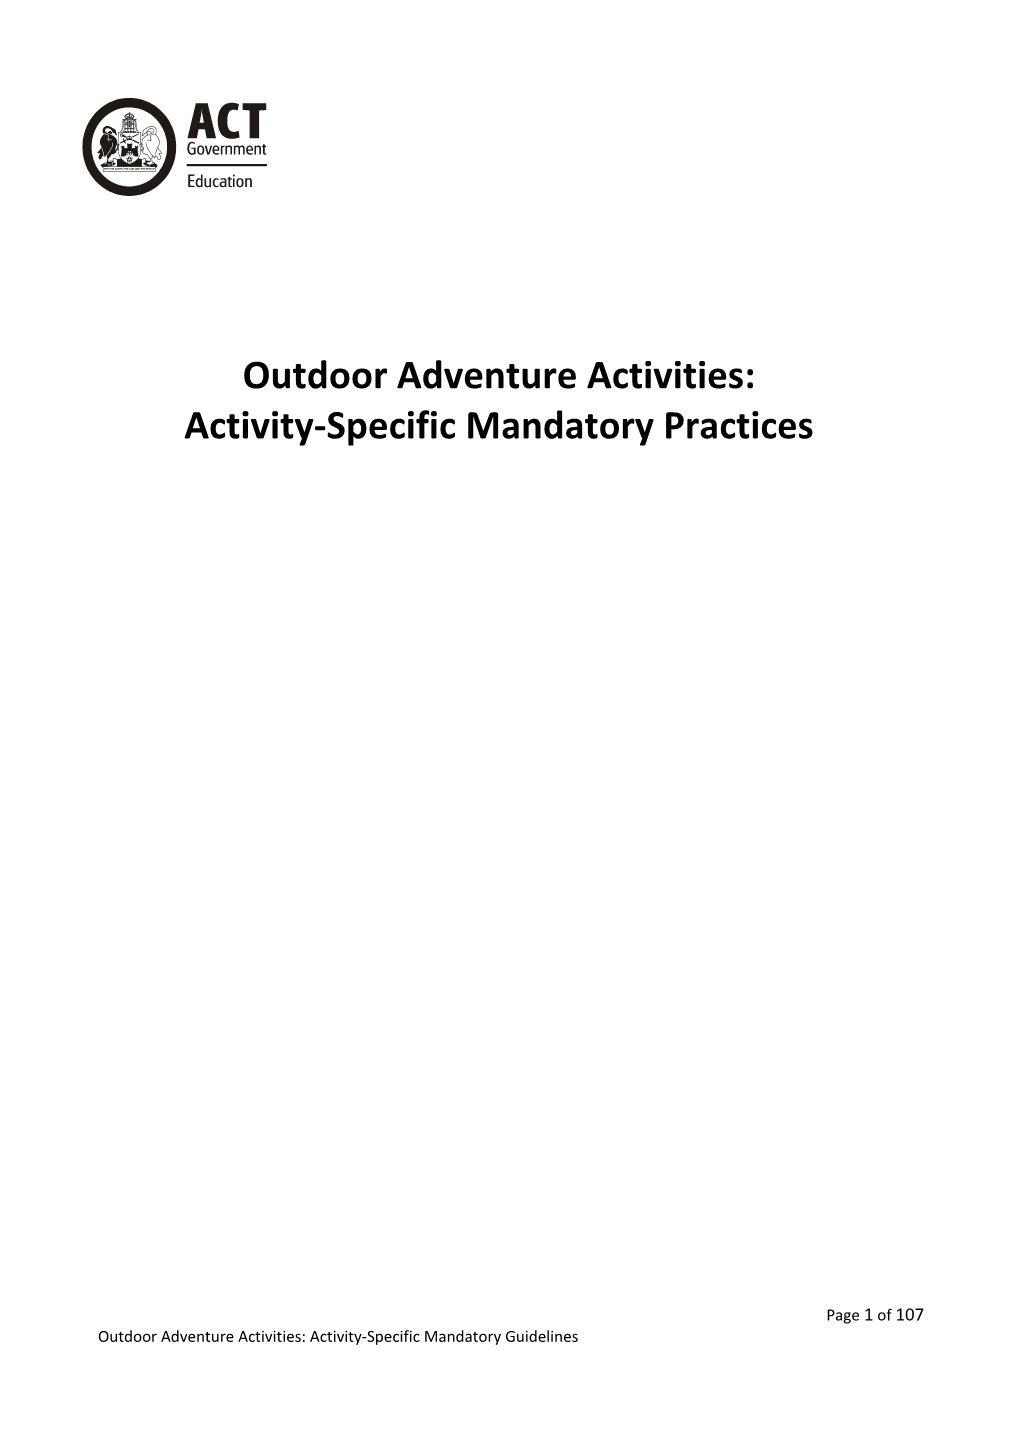 Outdoor Adventure Activities Policy and Mandatory Procedures